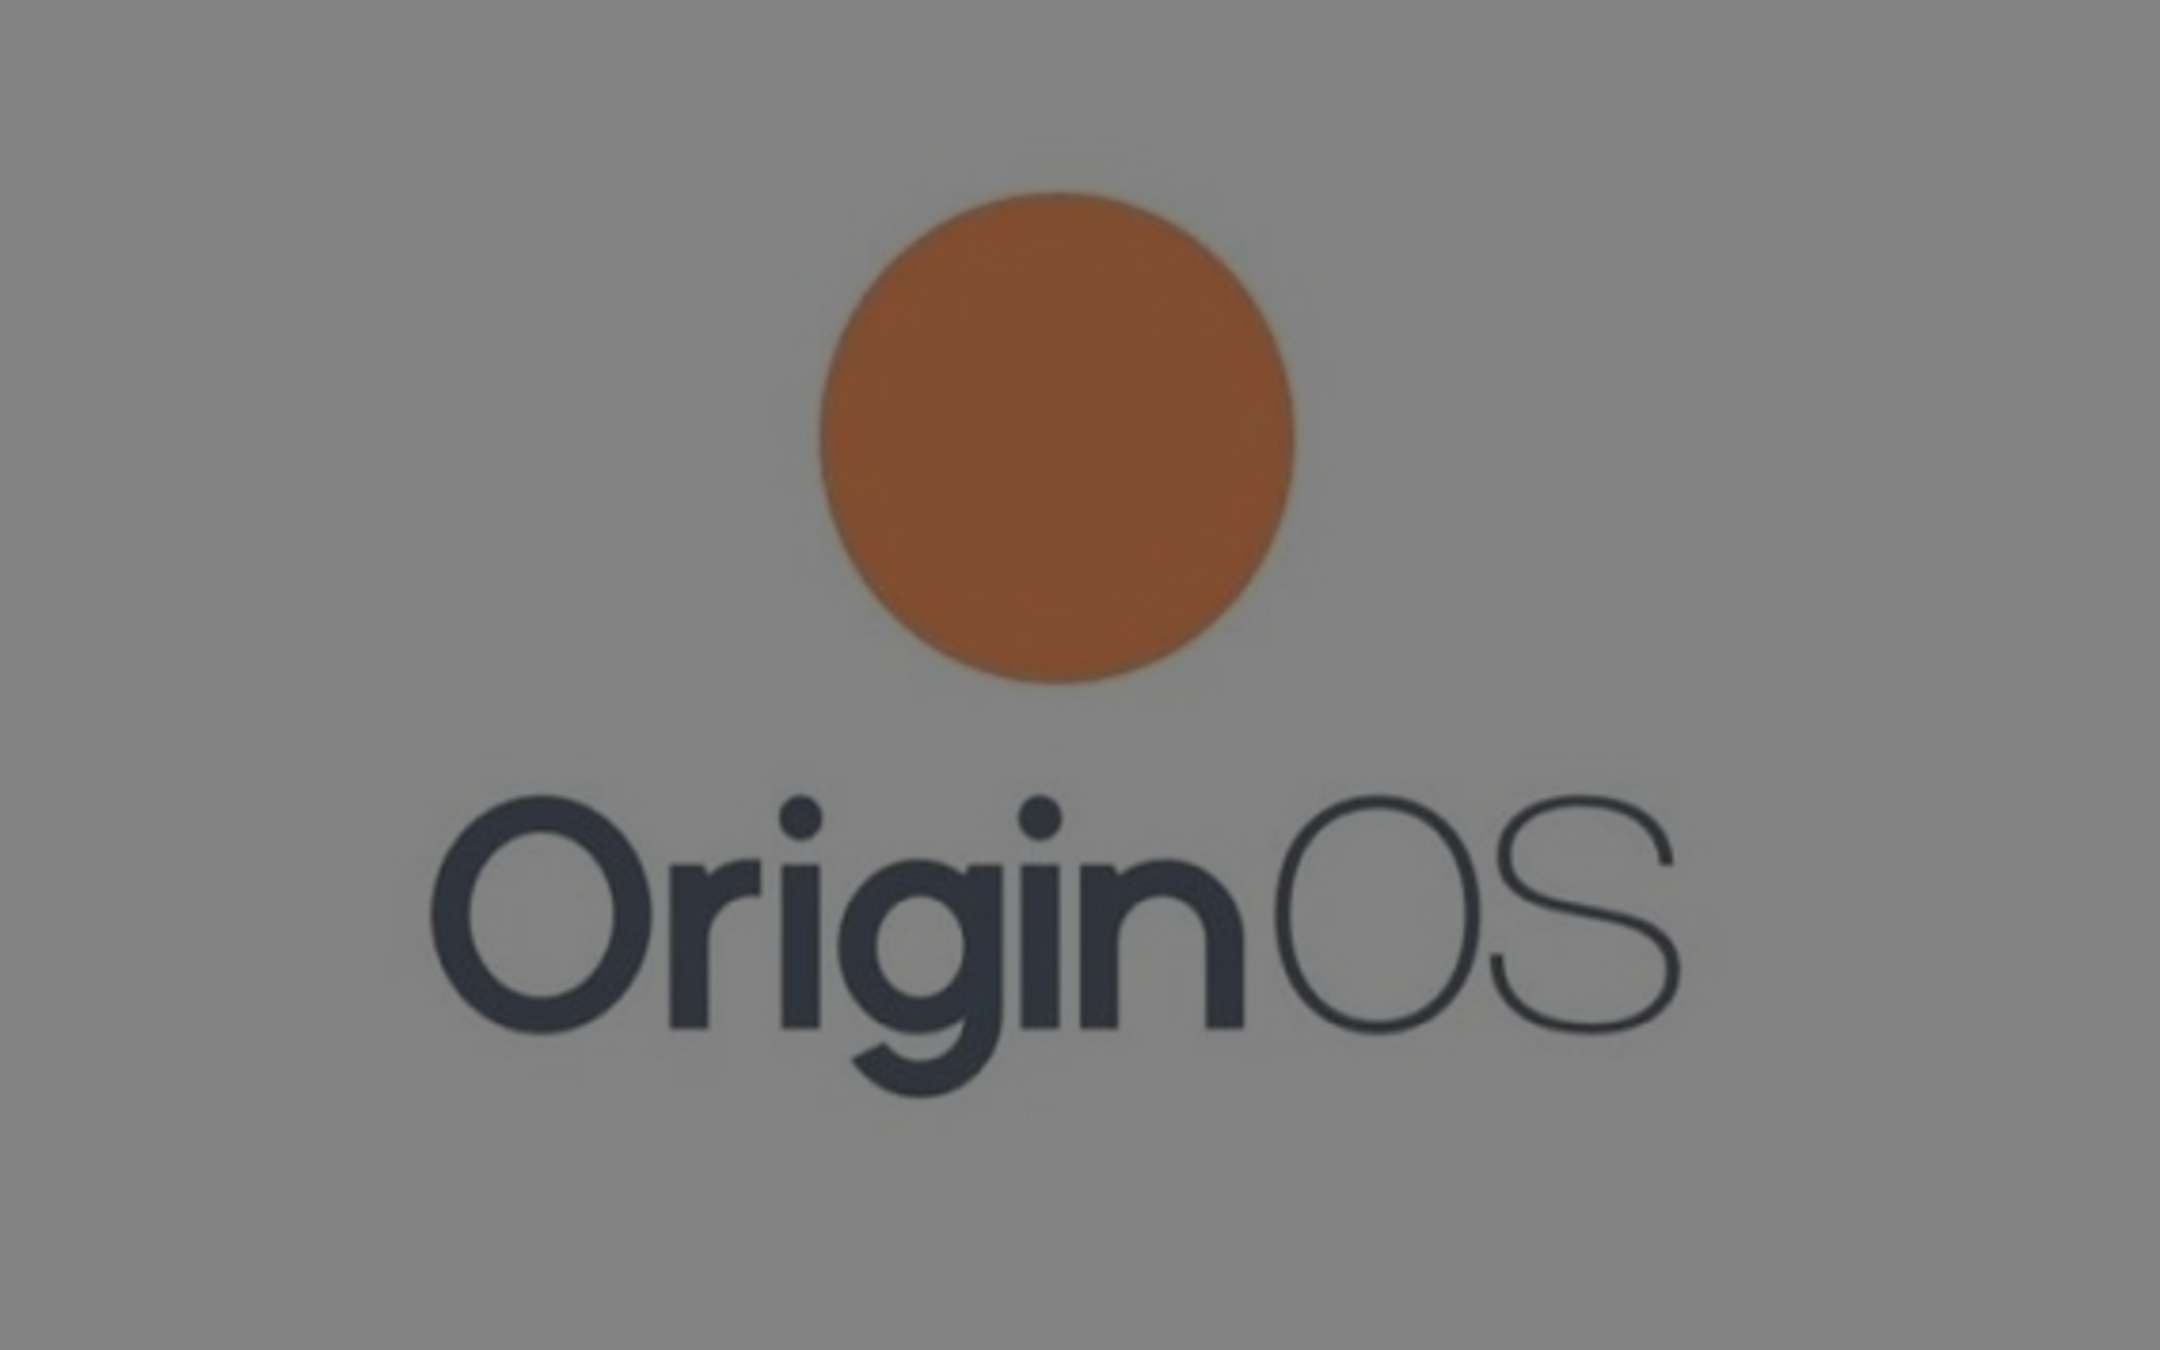 Vivo: Origin OS forse sarà così (immagine)